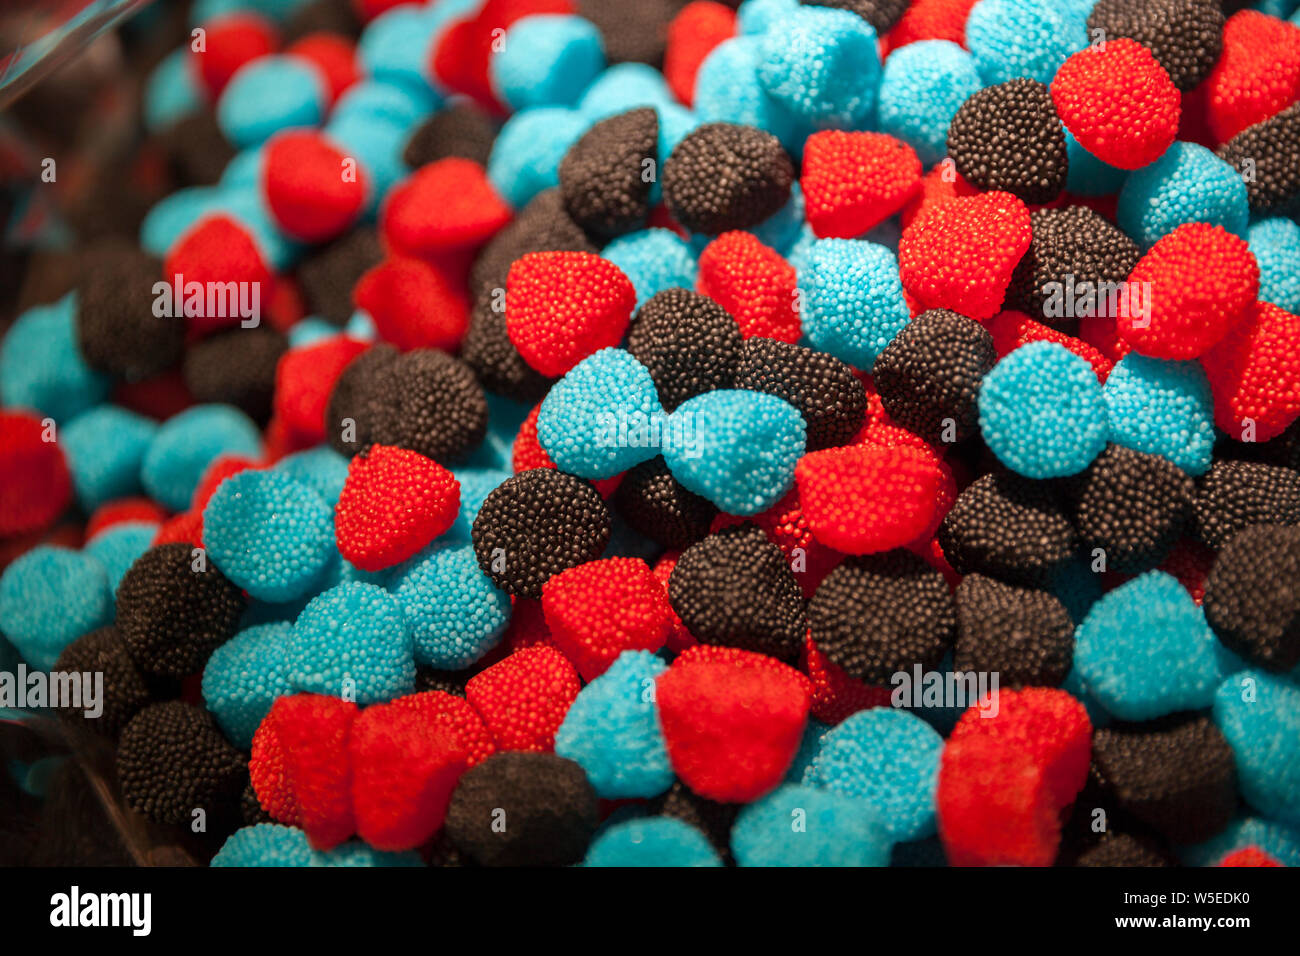 Dolci & caramelle in una pasticceria a Venezia, Italia Foto stock - Alamy